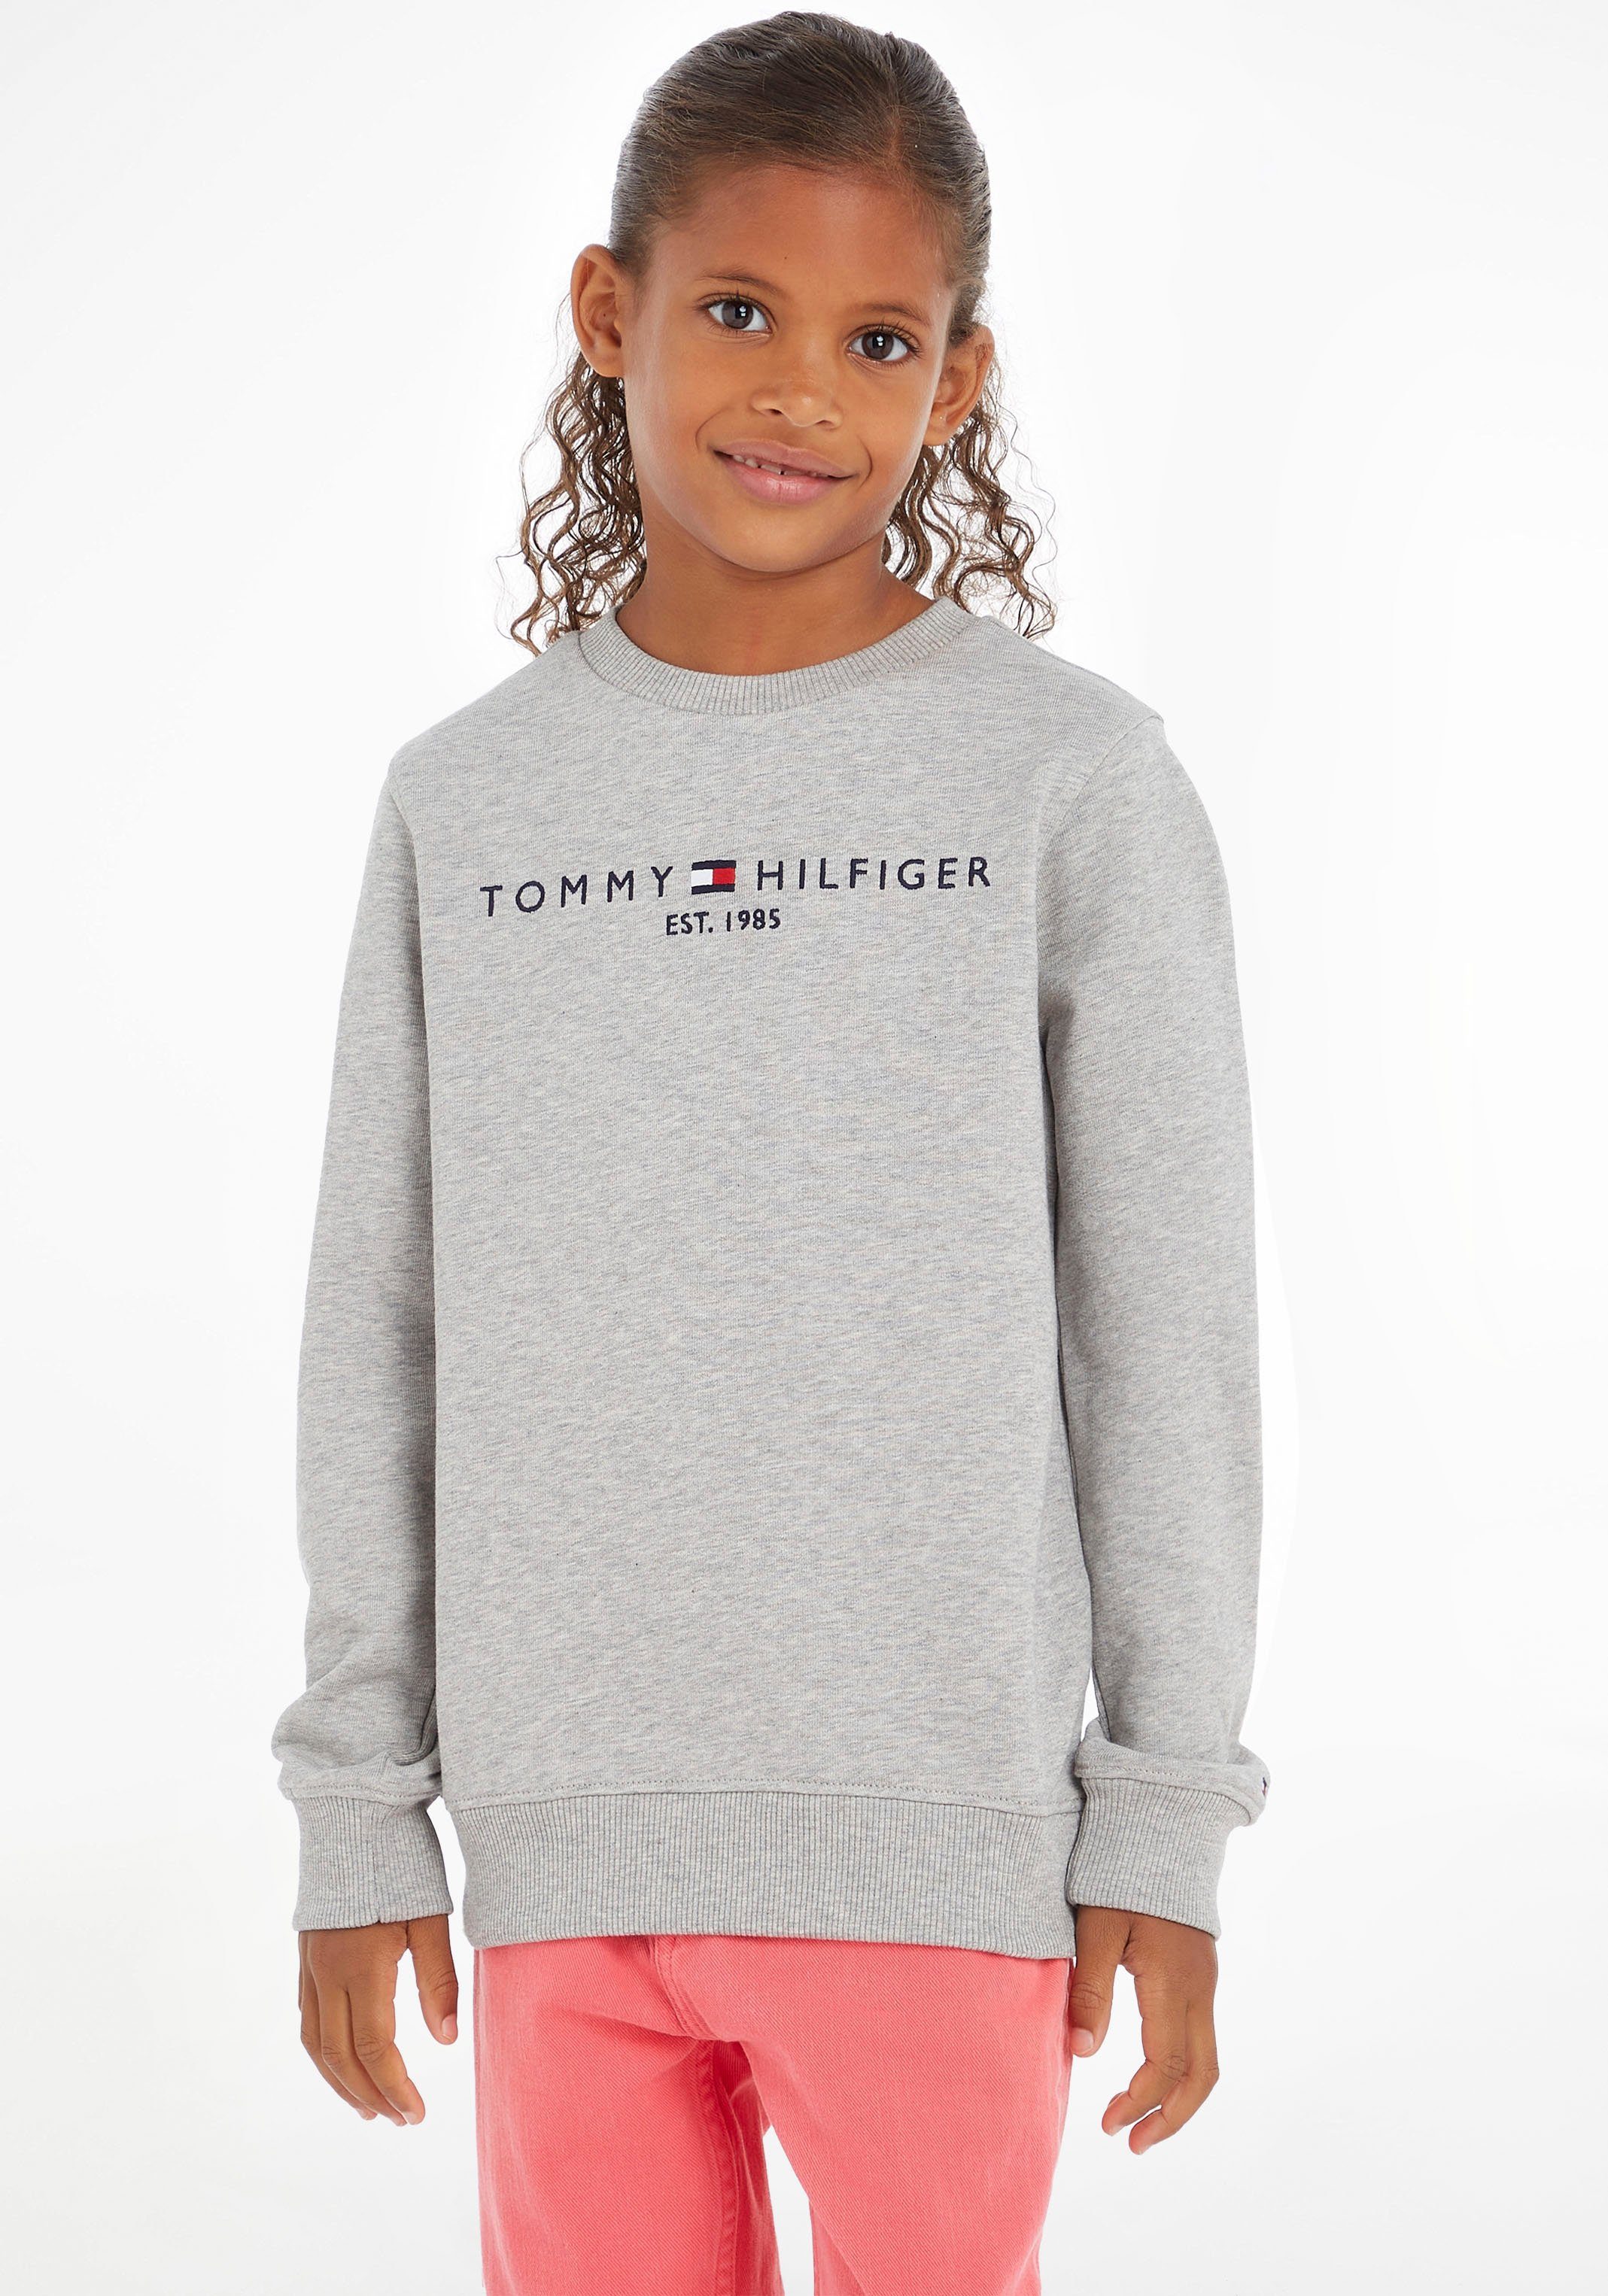 Tommy Hilfiger Sweatshirt ESSENTIAL SWEATSHIRT Kinder Kids Junior MiniMe,für Jungen und Mädchen | Sweatshirts